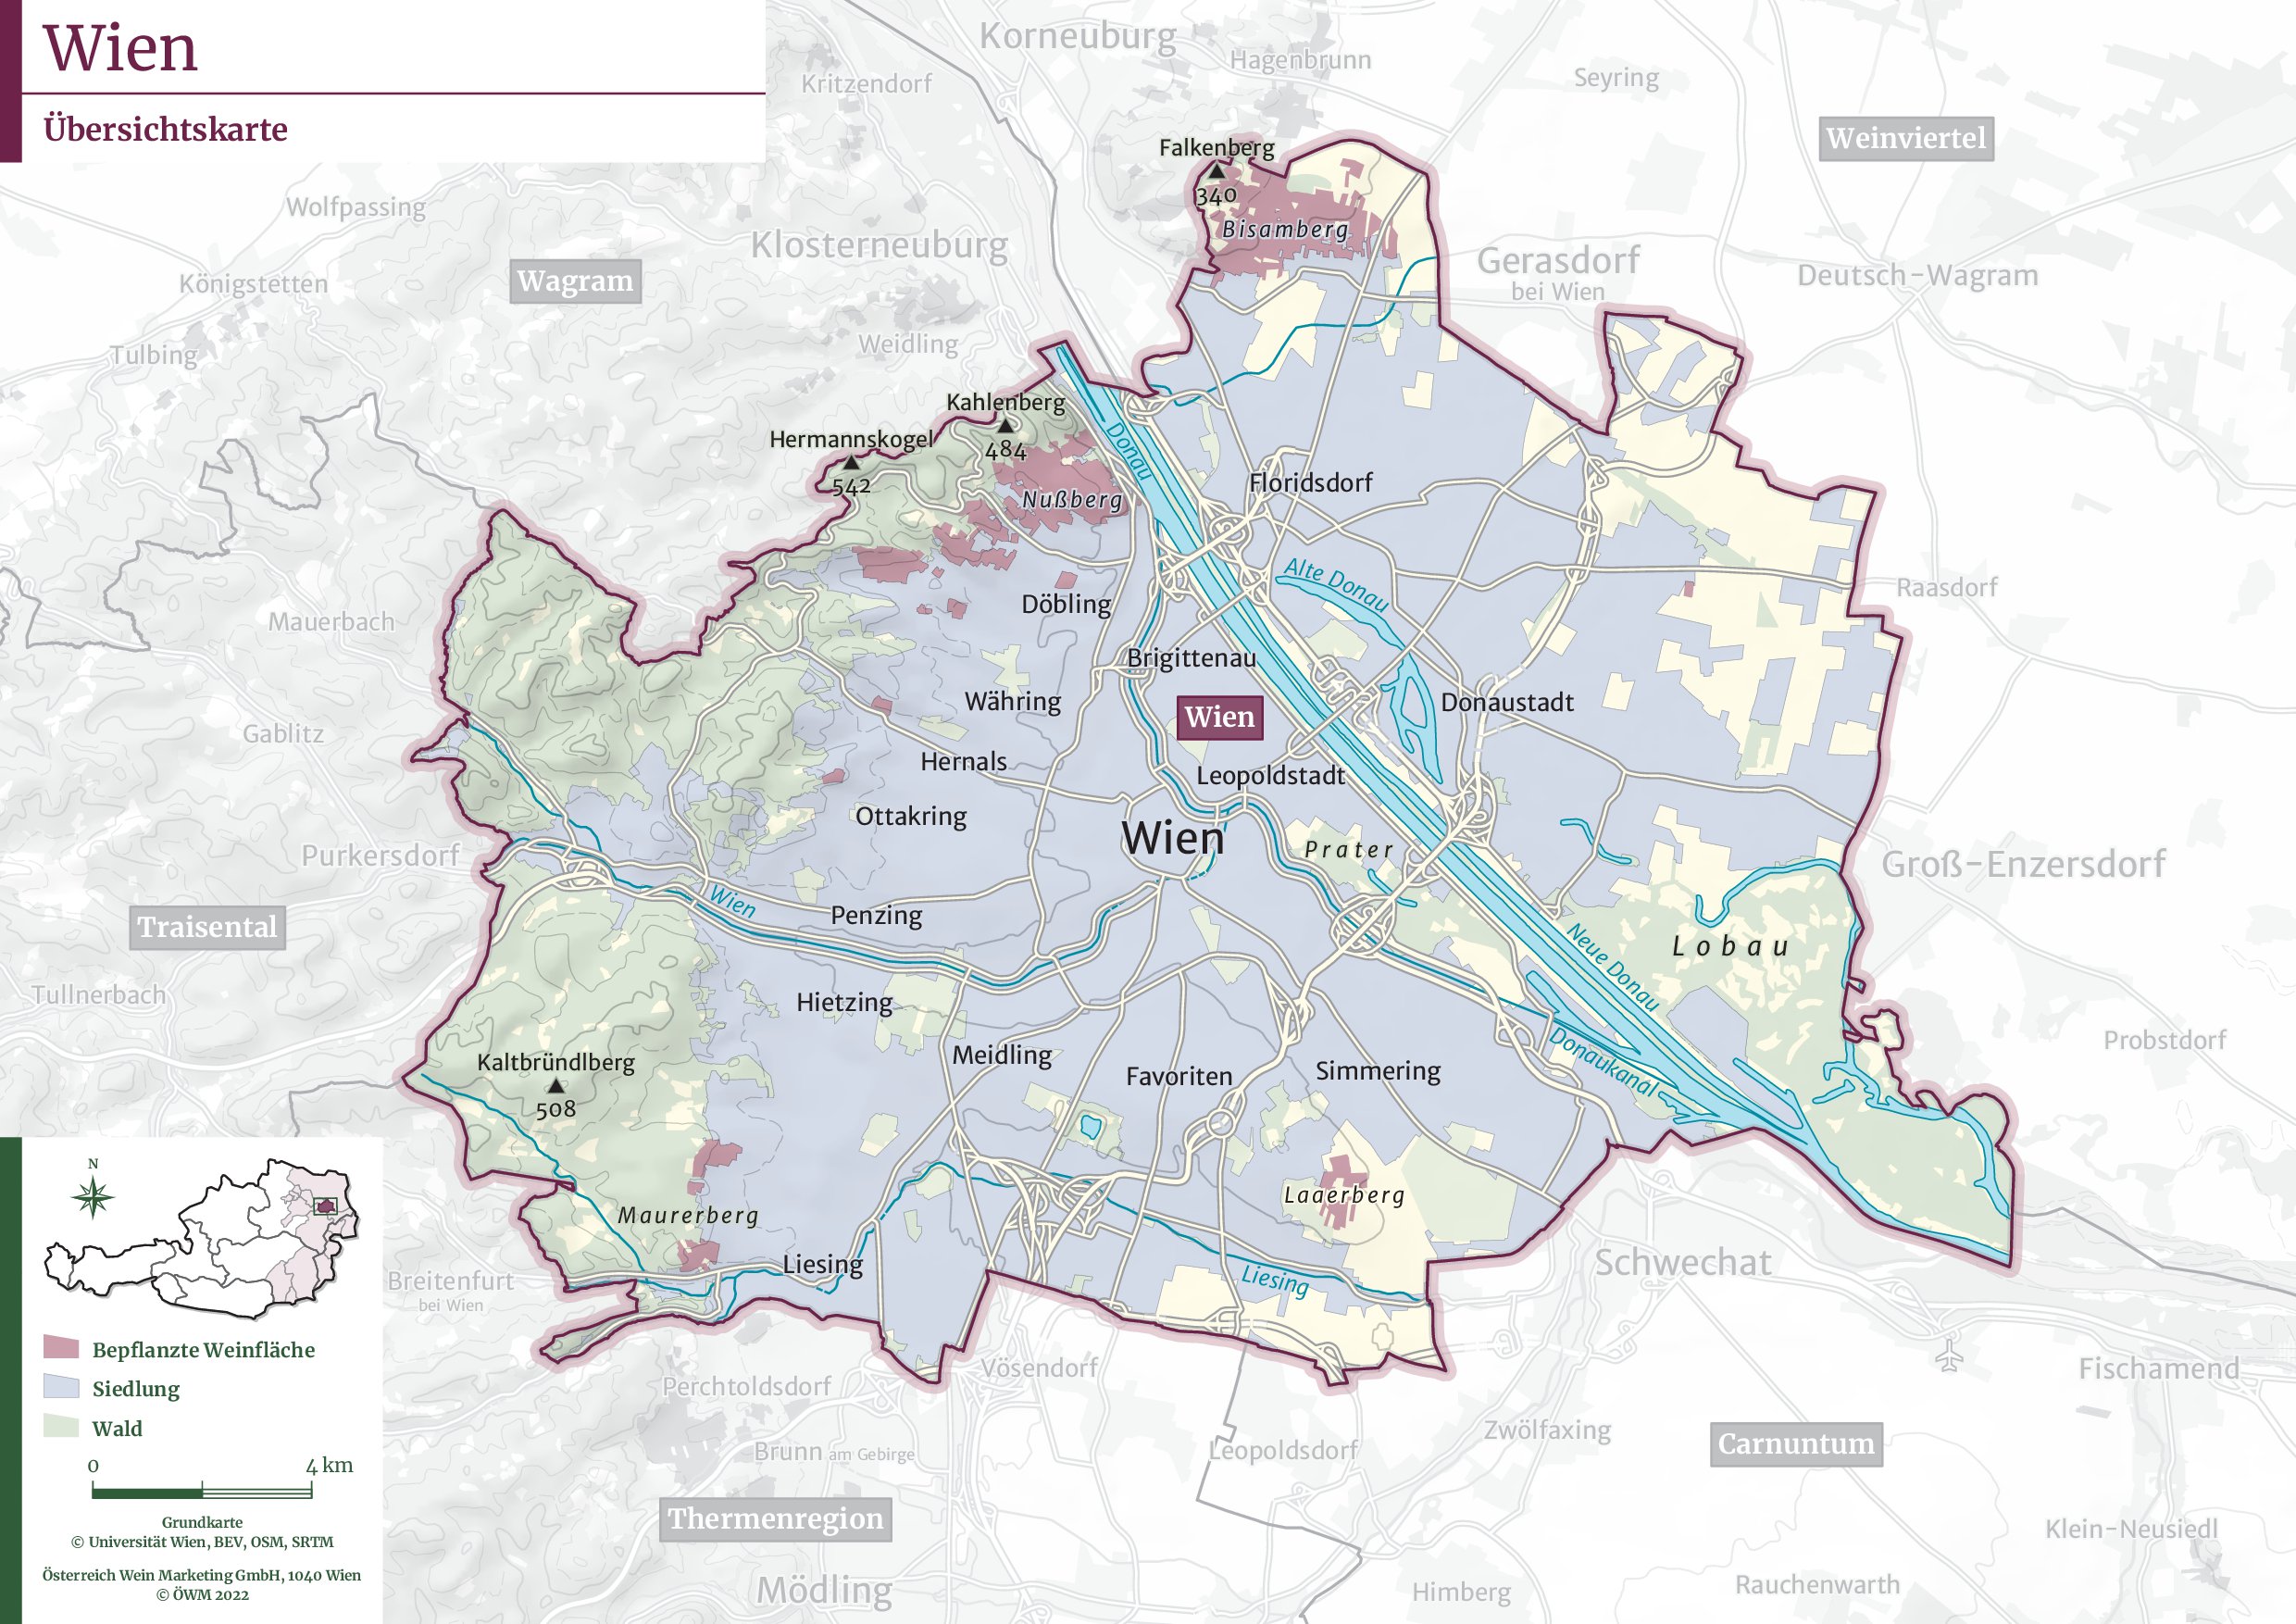 totpgrafische Karte Wiens - Weinbauregionen